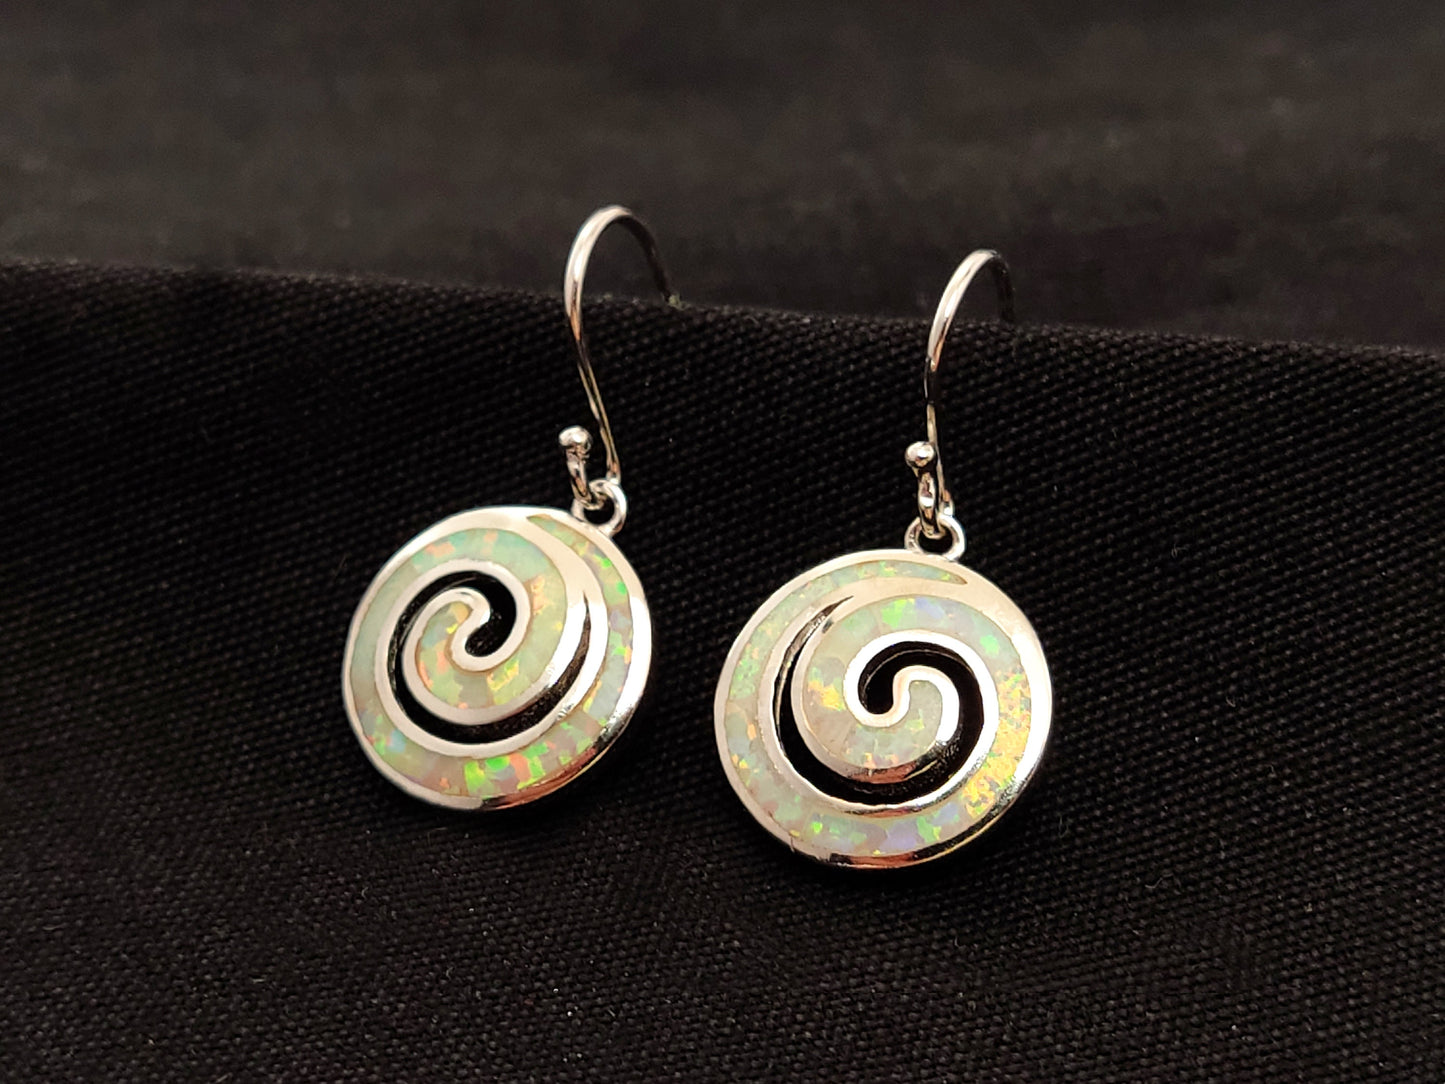 Sterling Silver 925 Greek Spiral Fire White Opal Dangle Earrings 15mm, Greek Opal Spiral Earrings, Greek Jewelry, Griechischer Opal Ohrringe